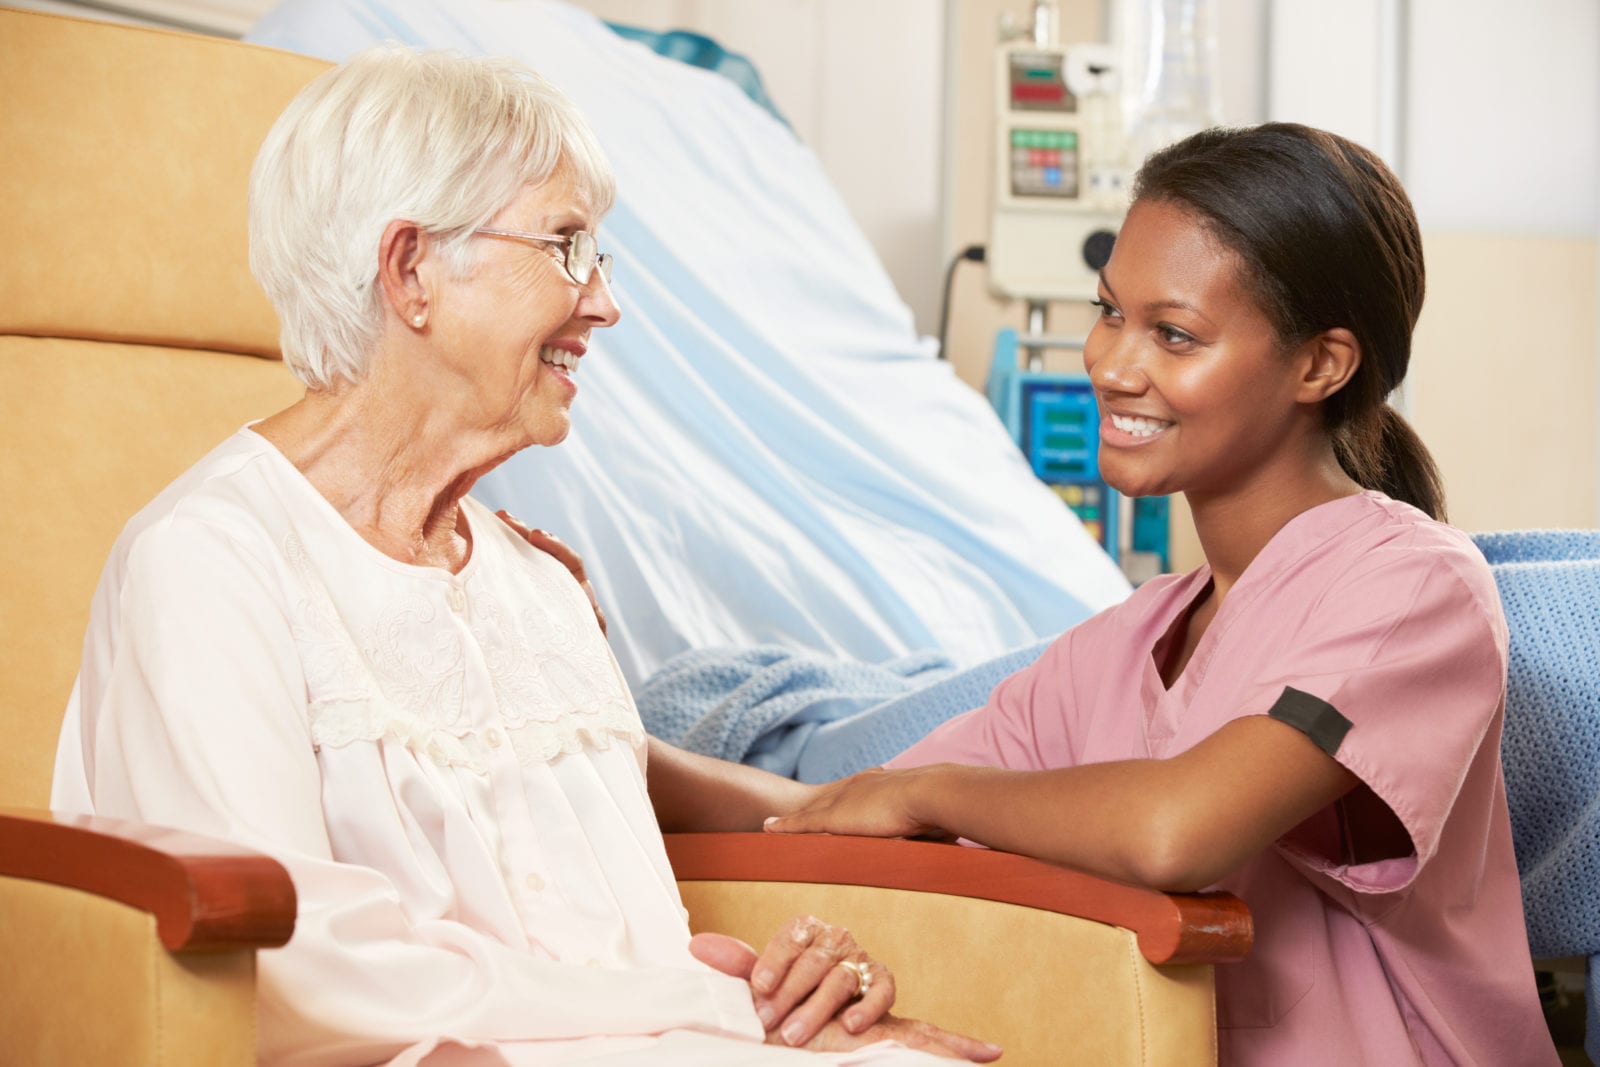 Does Medicare Cover Skilled Nursing?